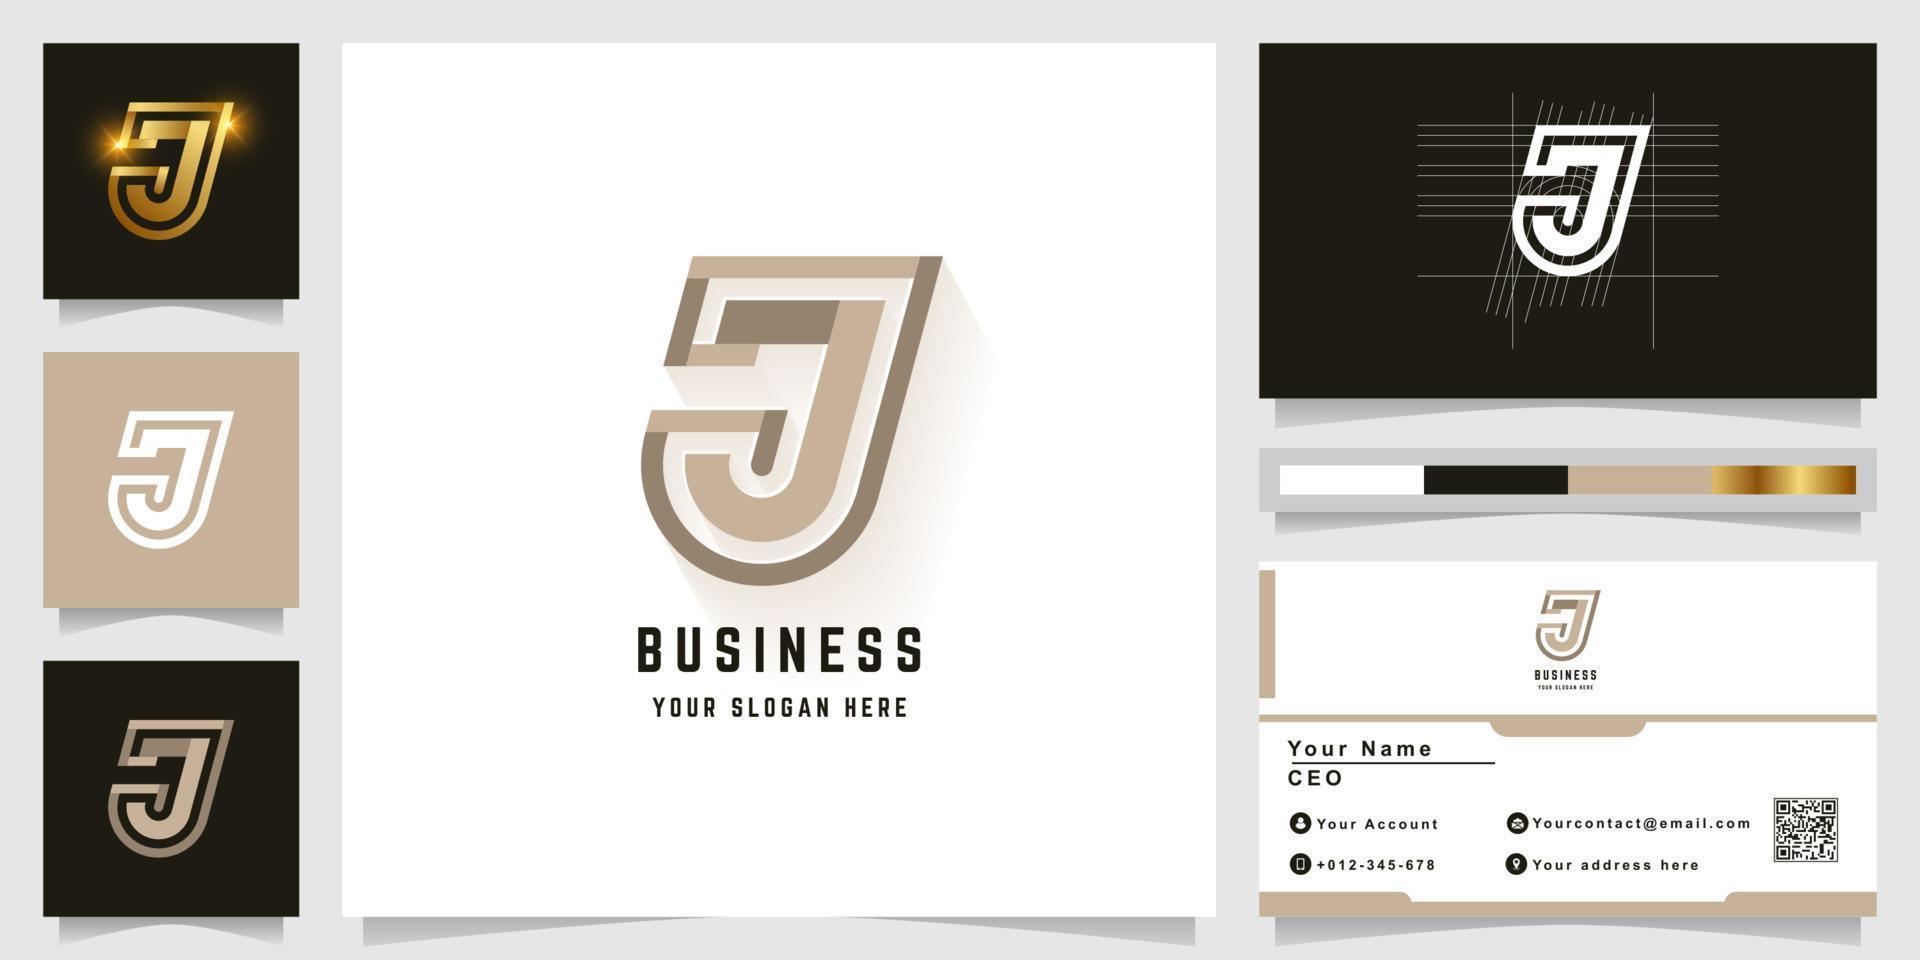 Letter J or JJ monogram logo with business card design vector